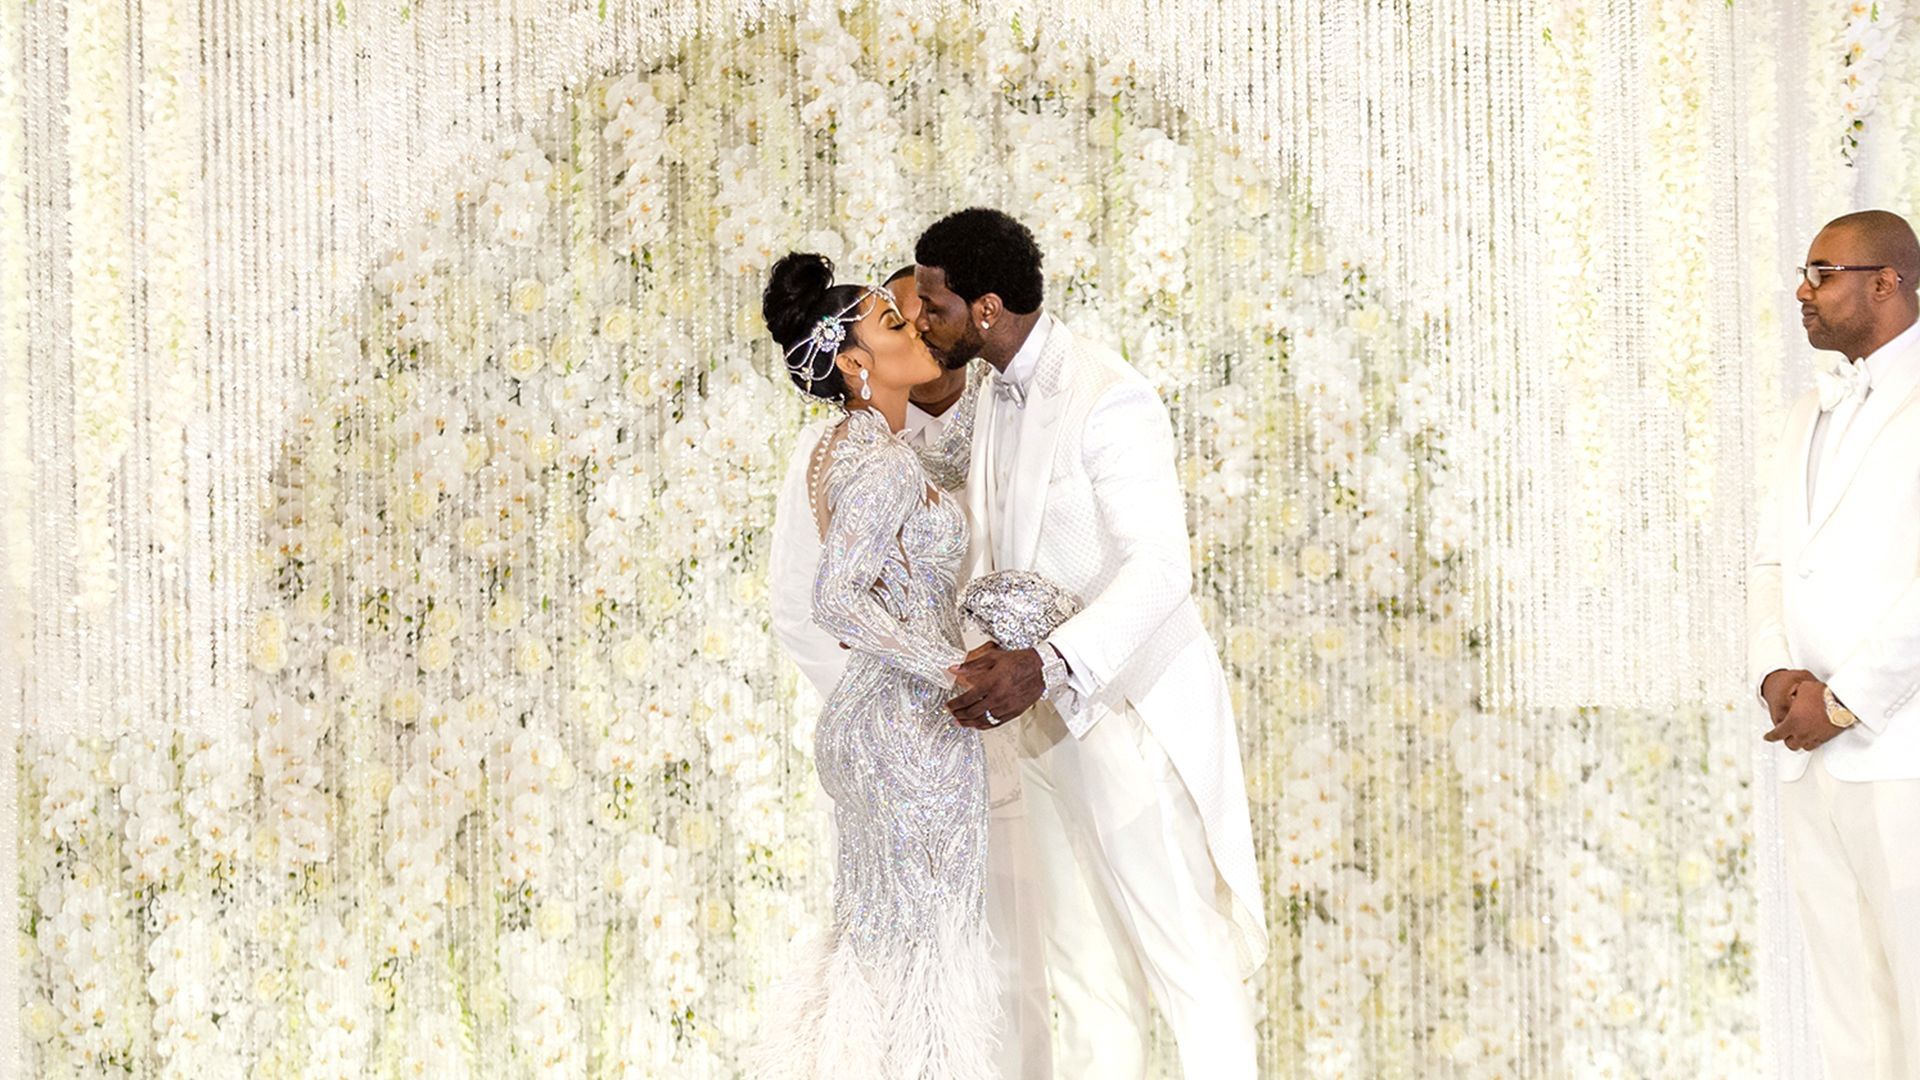 Gucci Mane and Keyshia Ka'Oir: The Mane Event Backdrop